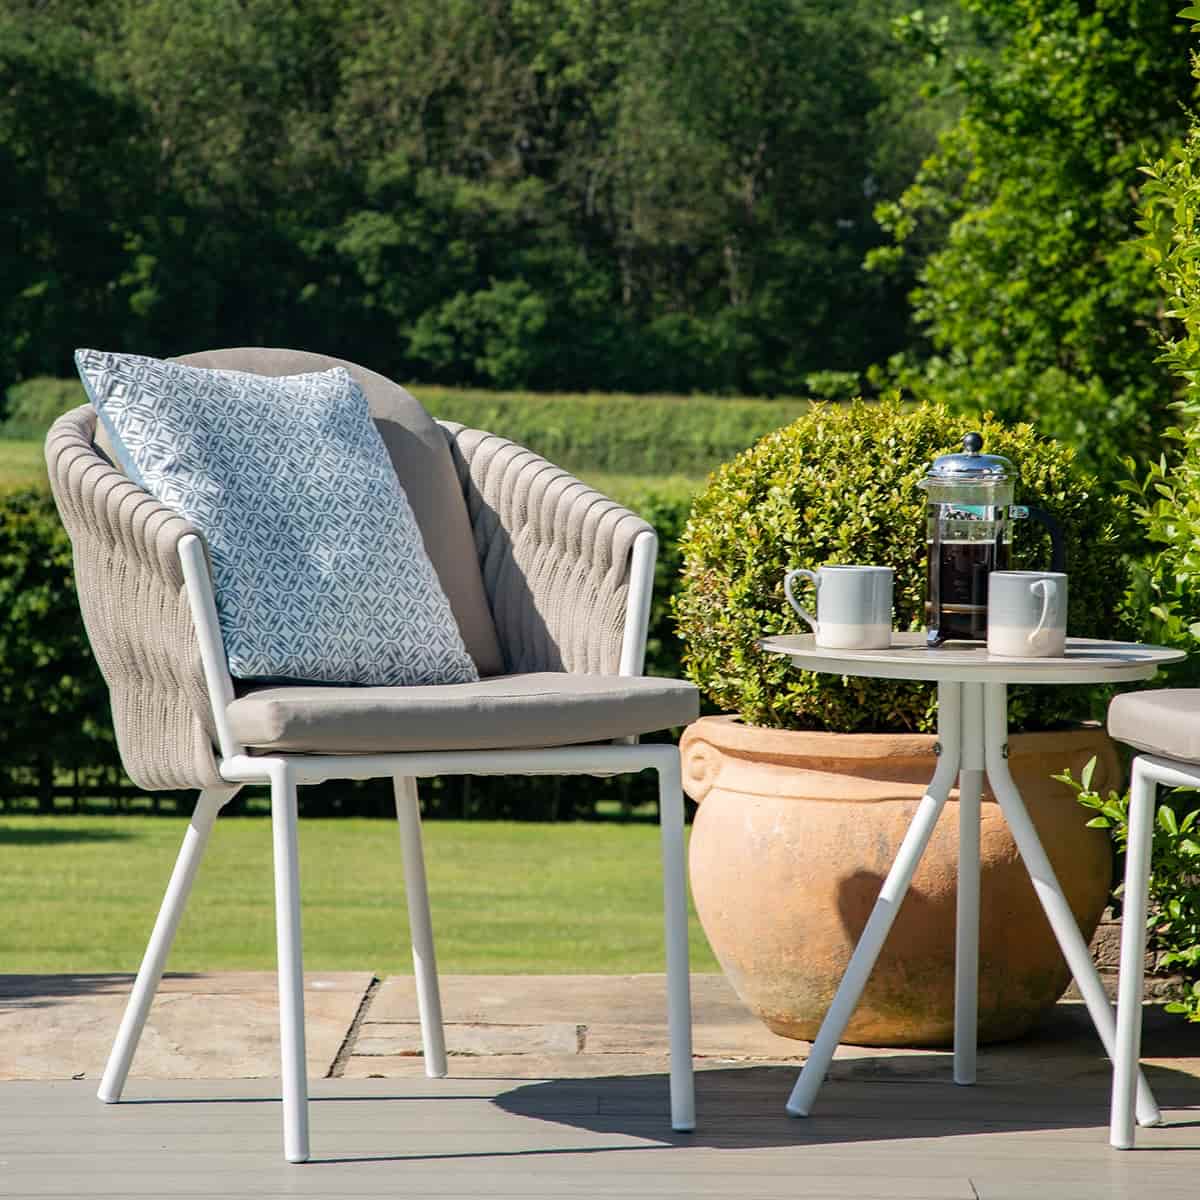 Marina 2 Seat Bistro Set Sandstone / Beige Rope and Aluminium Outdoor Furniture #colour_sandstone